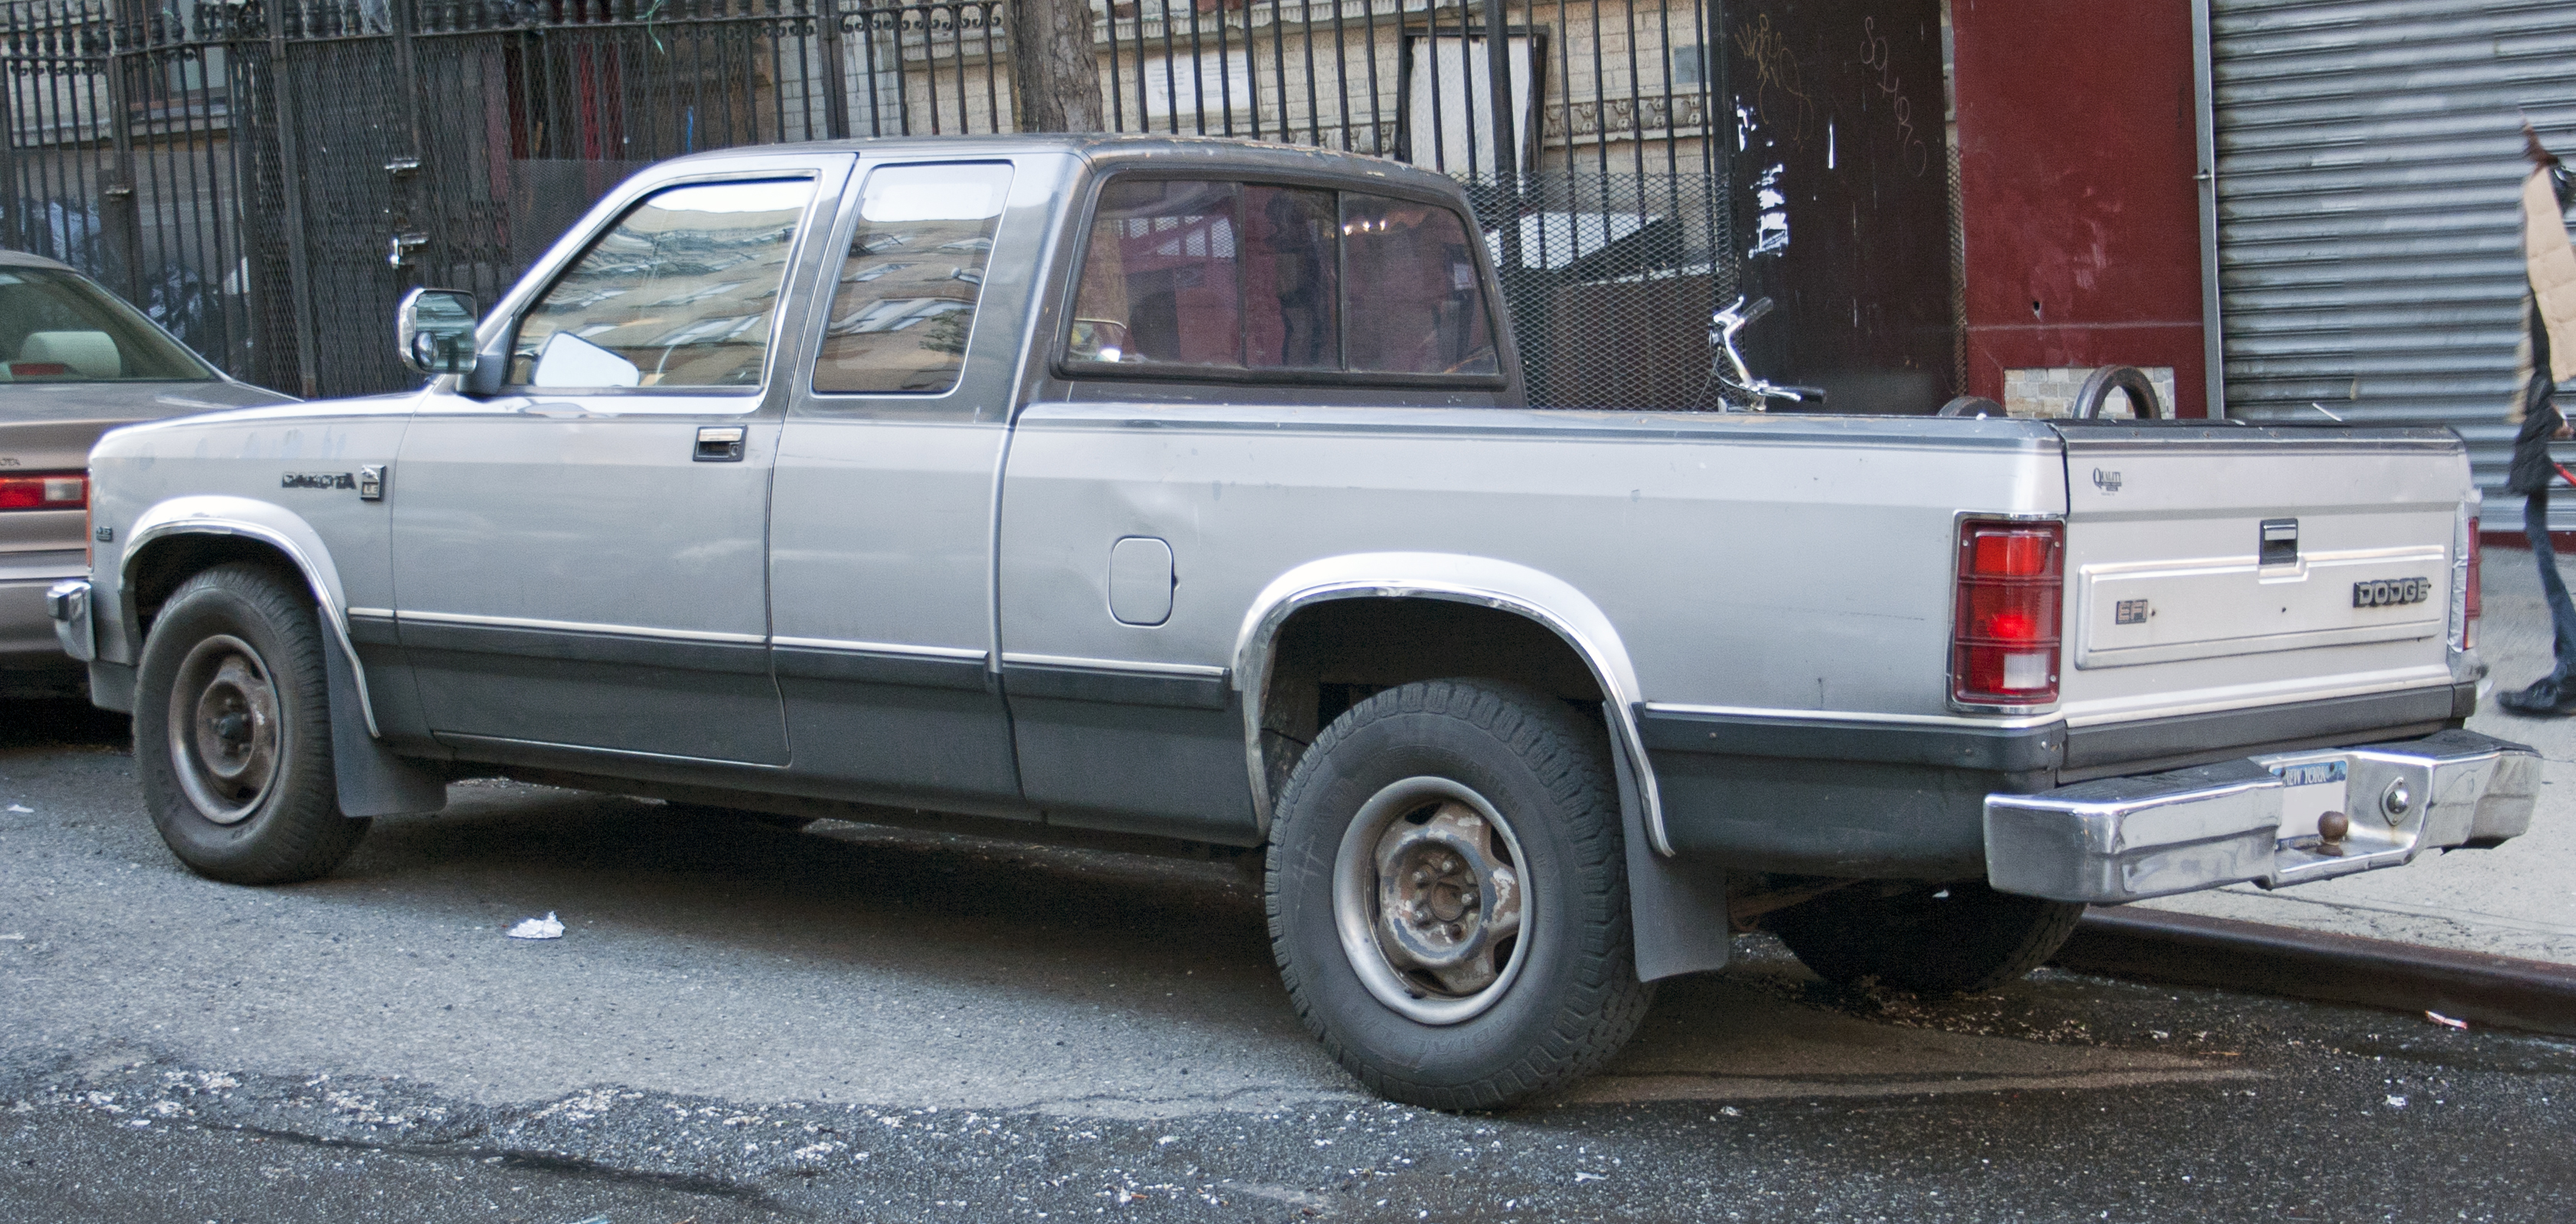 File:1990 Dodge Dakota LE 3.9 rear.jpg